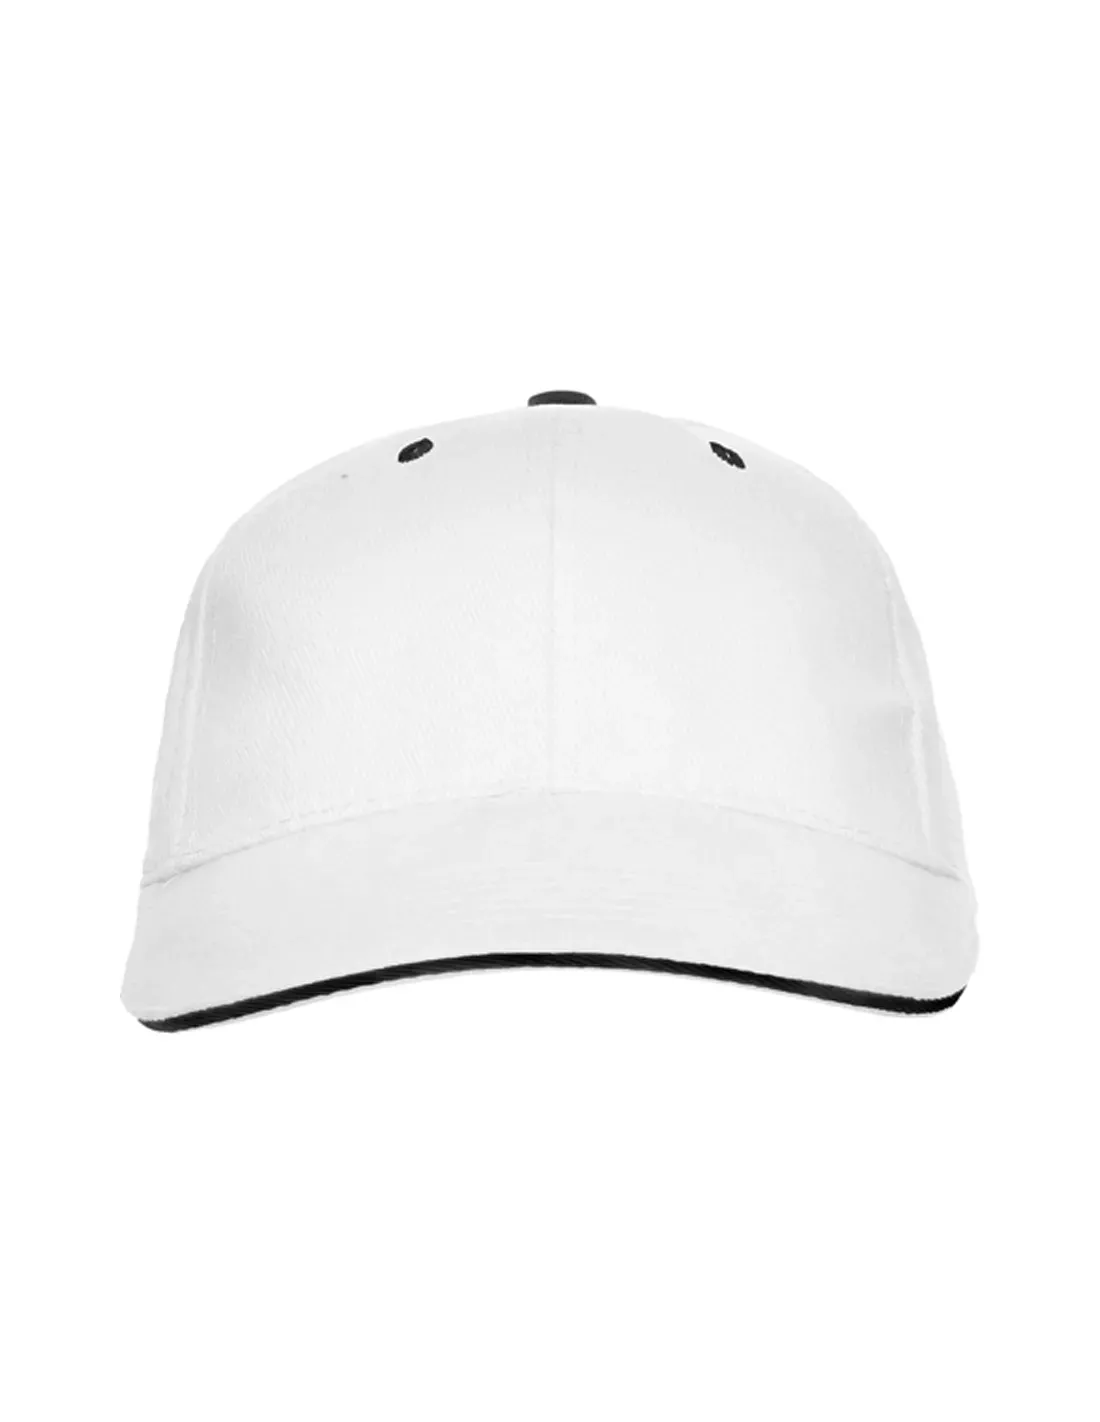 Gorra de pádel personalizada Roly | Al mayor desde 1.42€